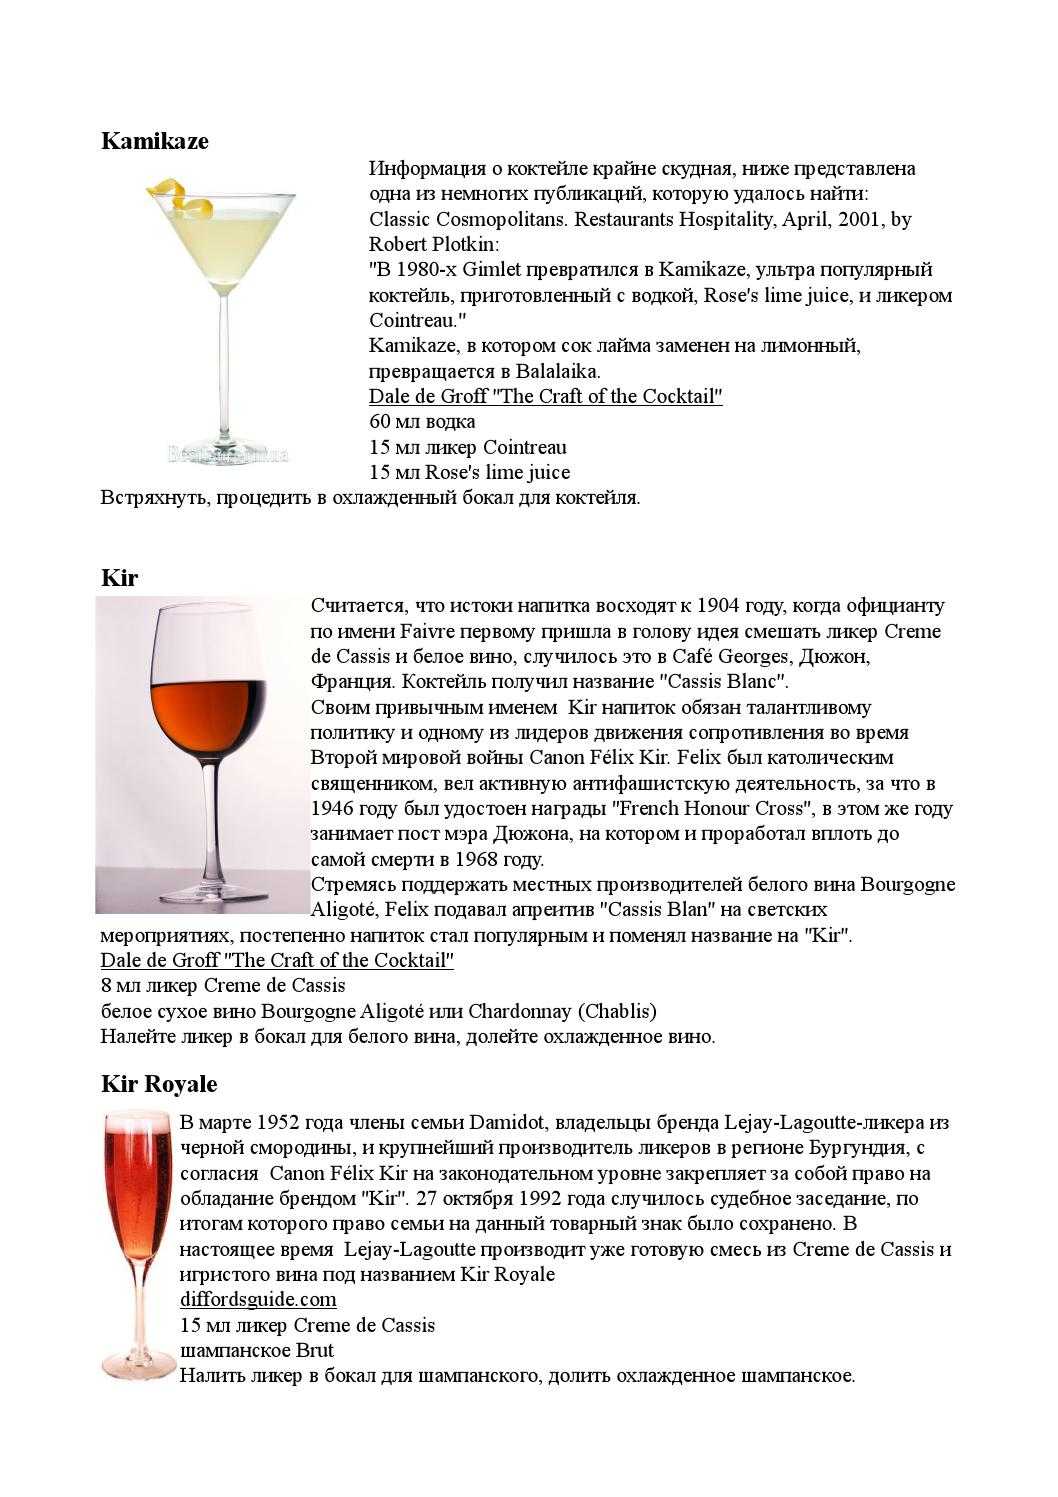 Рецепт приготовления коктейля кир рояль - алкофан